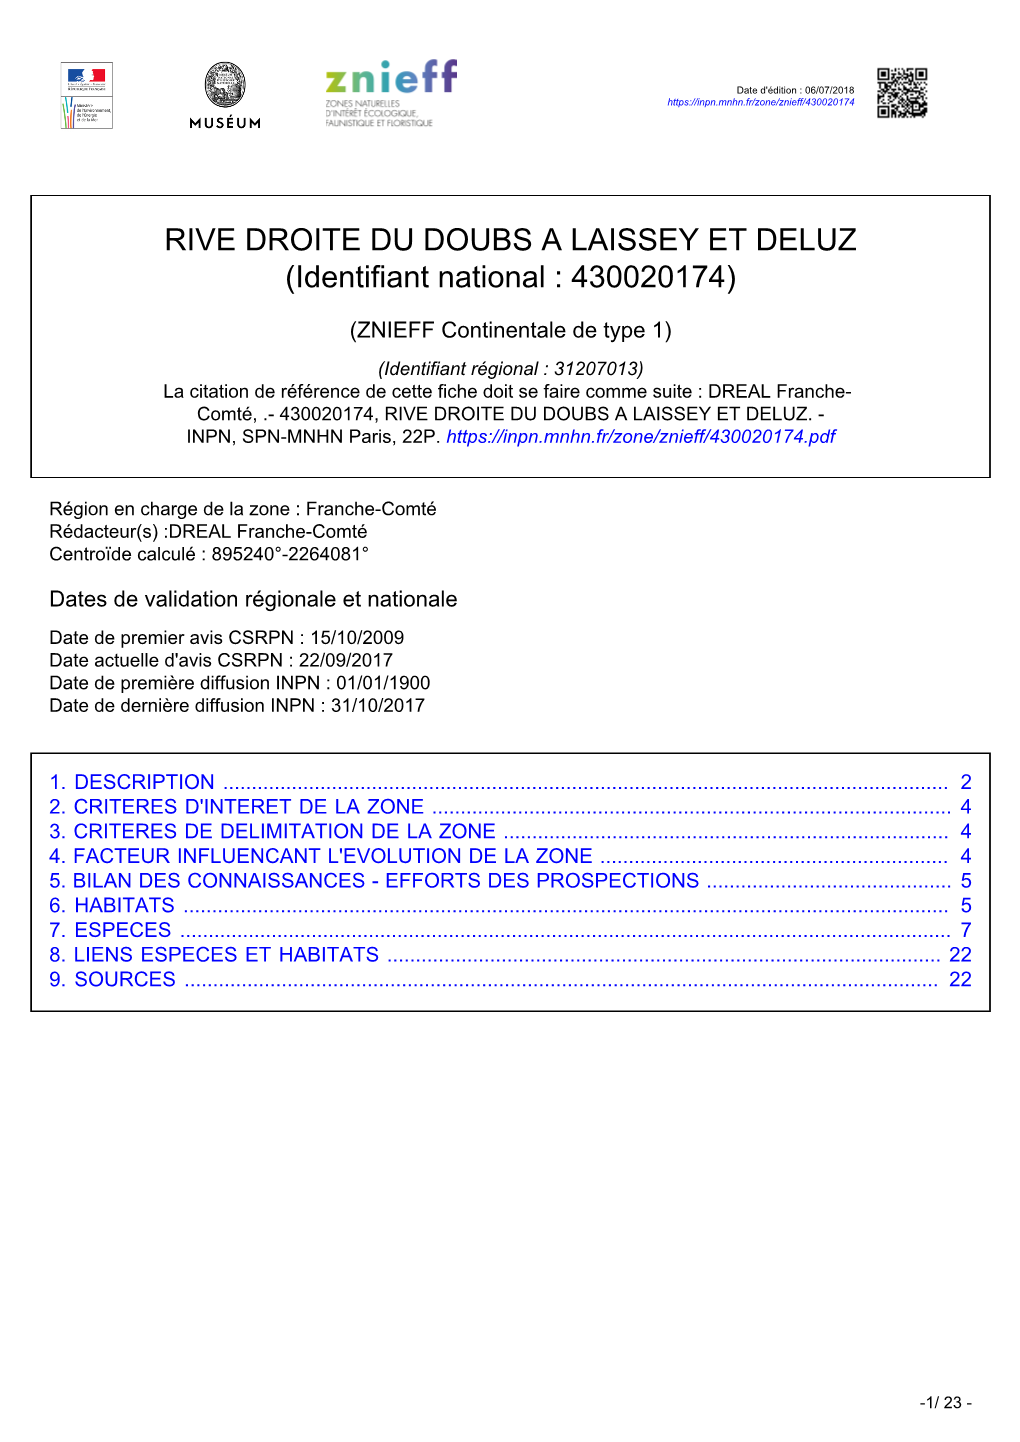 RIVE DROITE DU DOUBS a LAISSEY ET DELUZ (Identifiant National : 430020174)